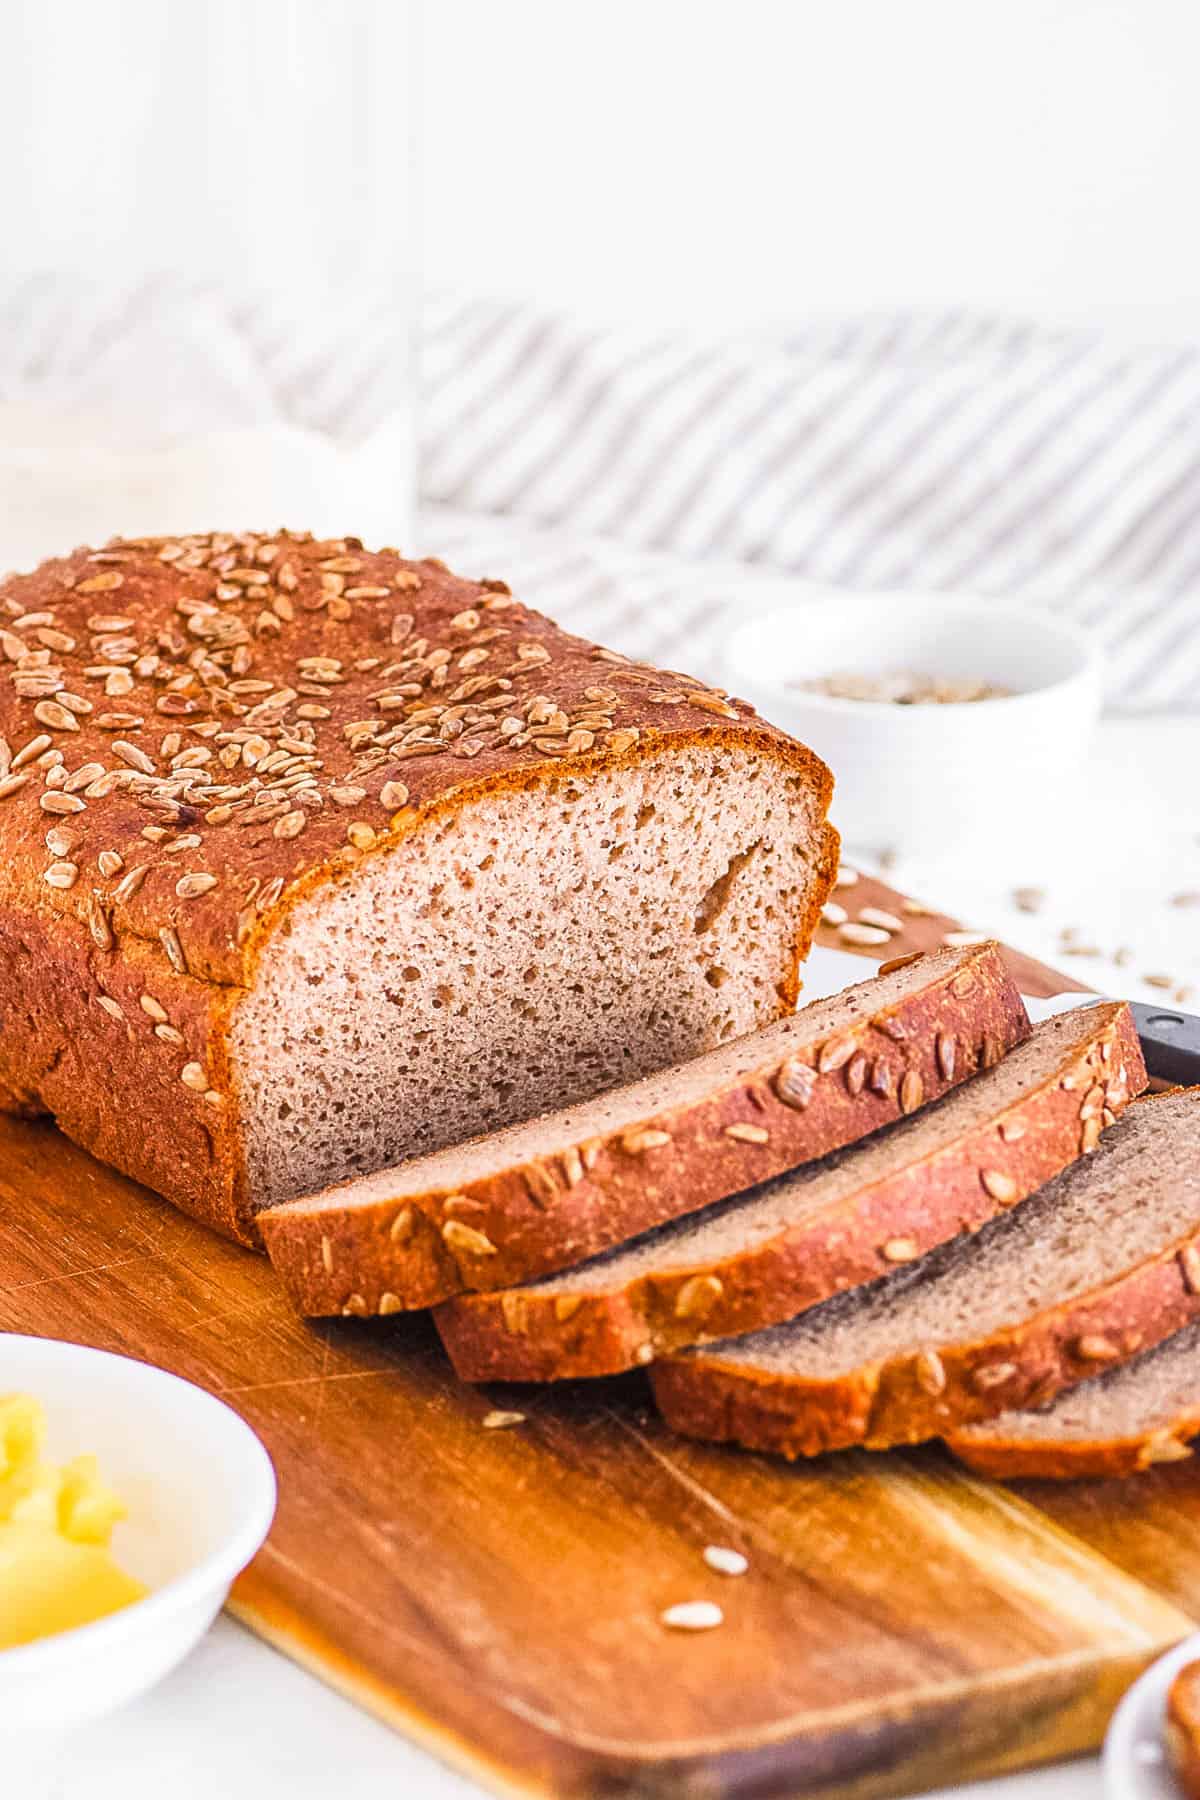 دستور تهیه نان گندم سیاه سالم وگان بدون گلوتن آسان برش داده شده روی تخته برش